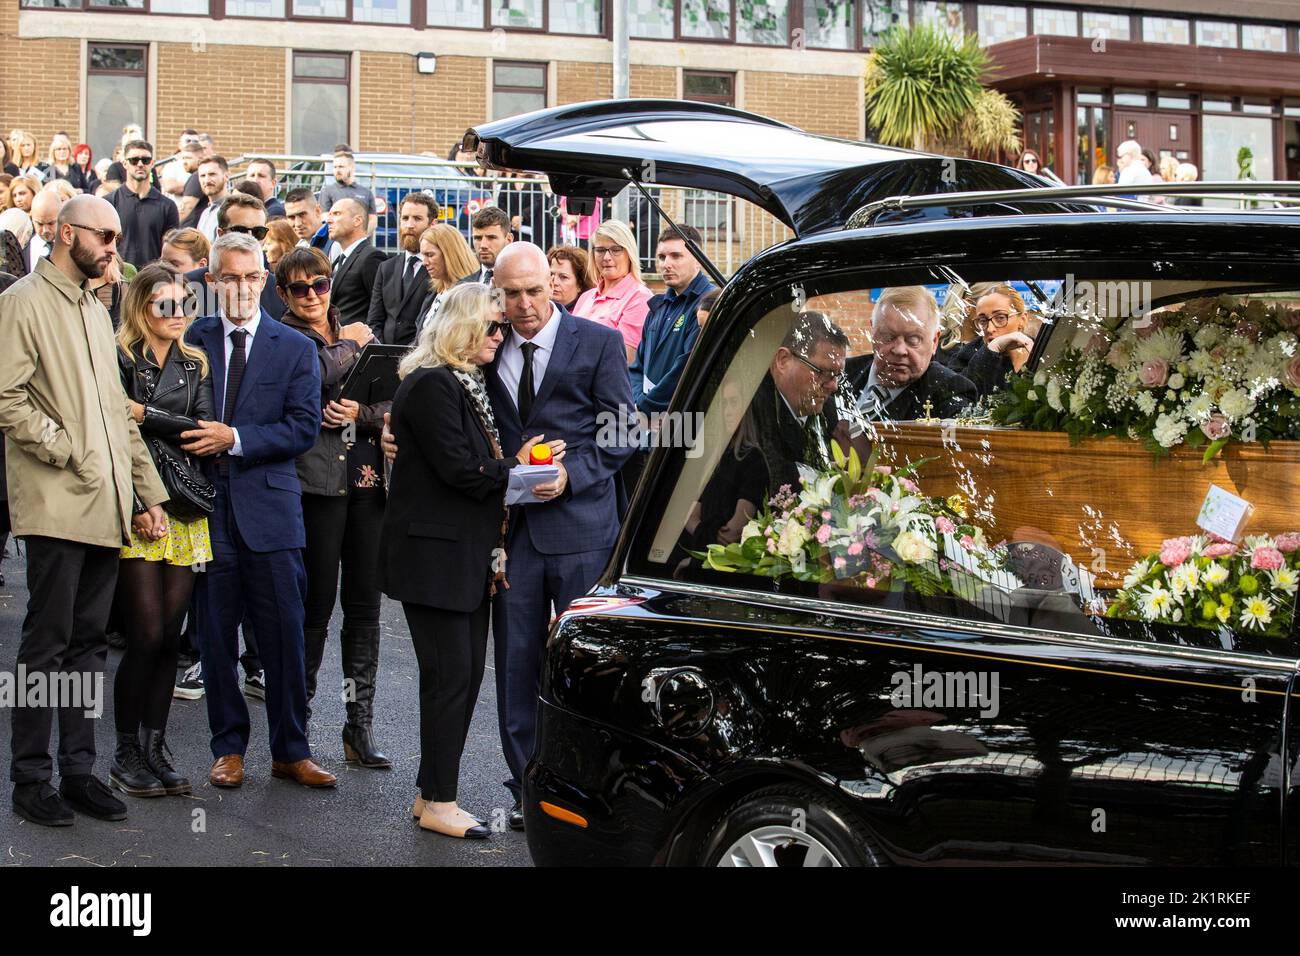 La famille de Hollie Thomson regarde alors que son cercueil est placé à l'arrière d'une corbillard à l'église St Michael's, à Belfast ouest, après sa messe funéraire. Date de la photo: Mardi 20 septembre 2022. Banque D'Images